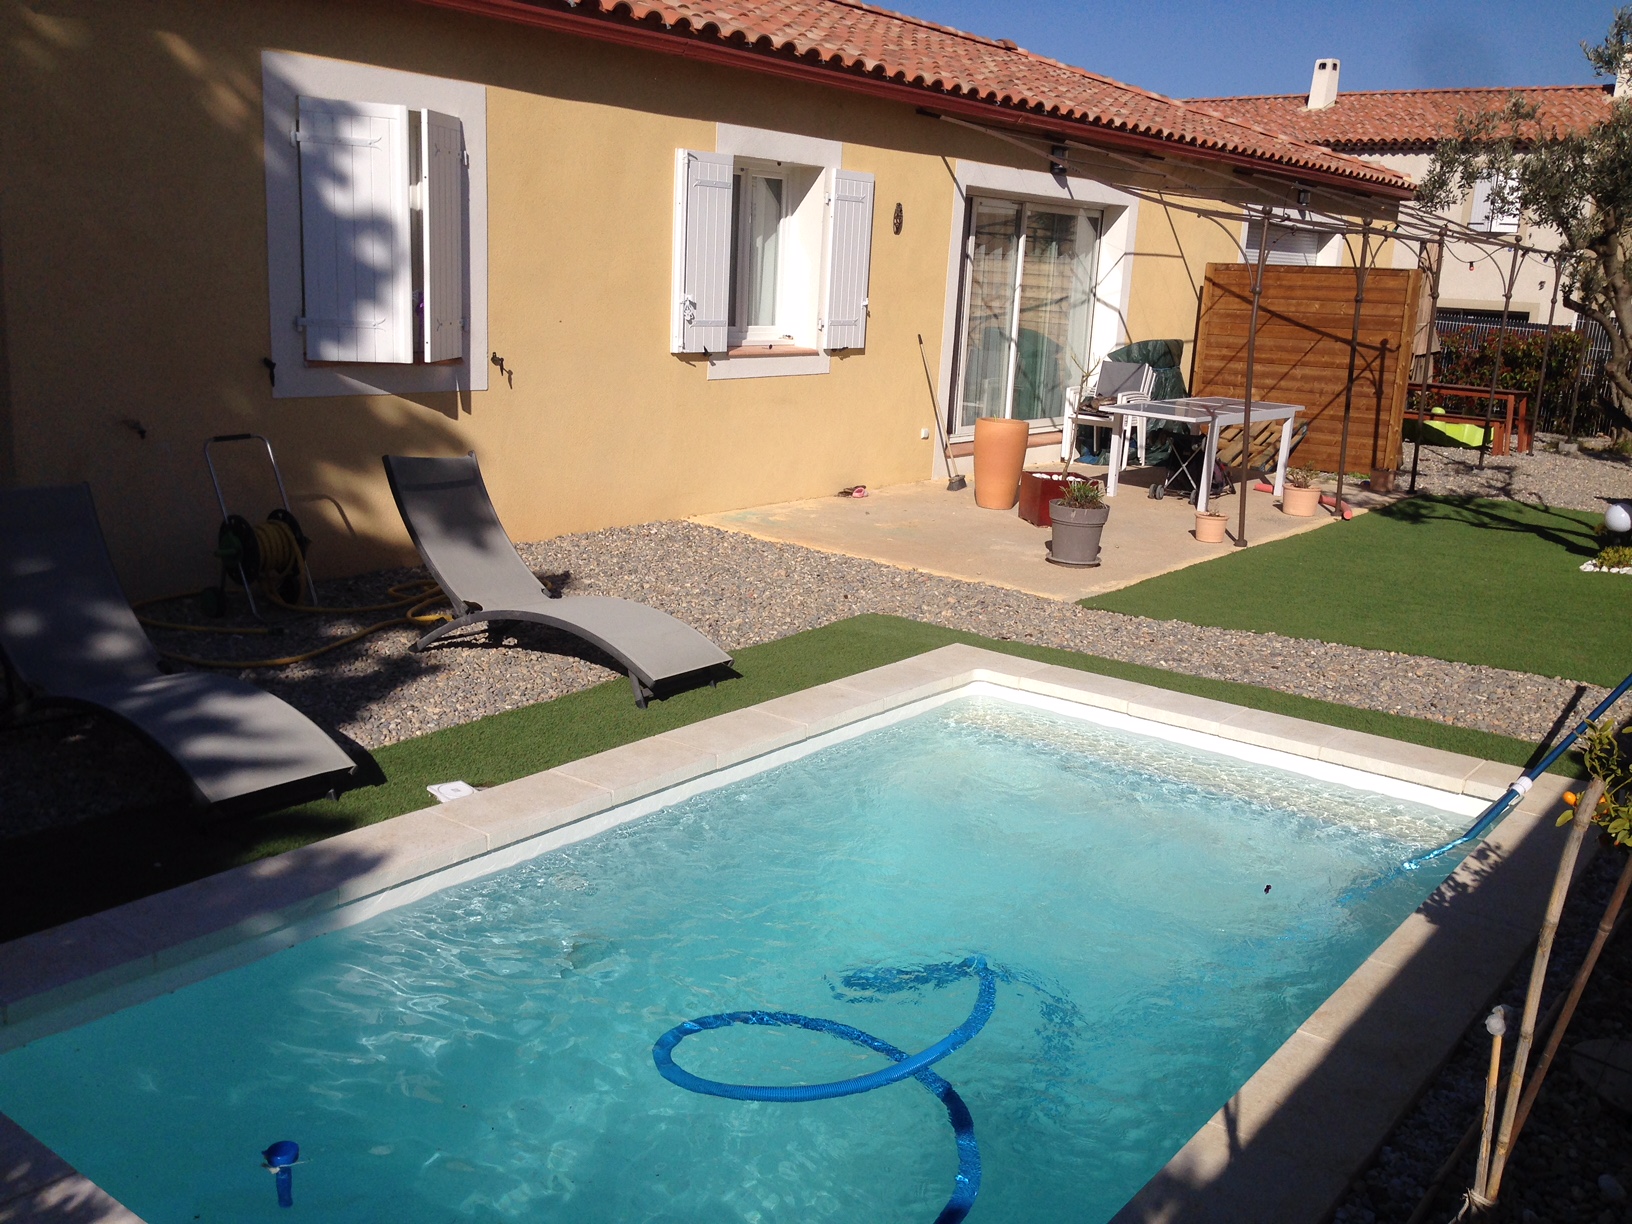 Piscine coque à fond plat 4.30 mètres x 2.25 mètres   Lac de Carces mini- piscine - Vente de piscine coque à Martigues - Neptune Piscines par Les Eaux Bleues